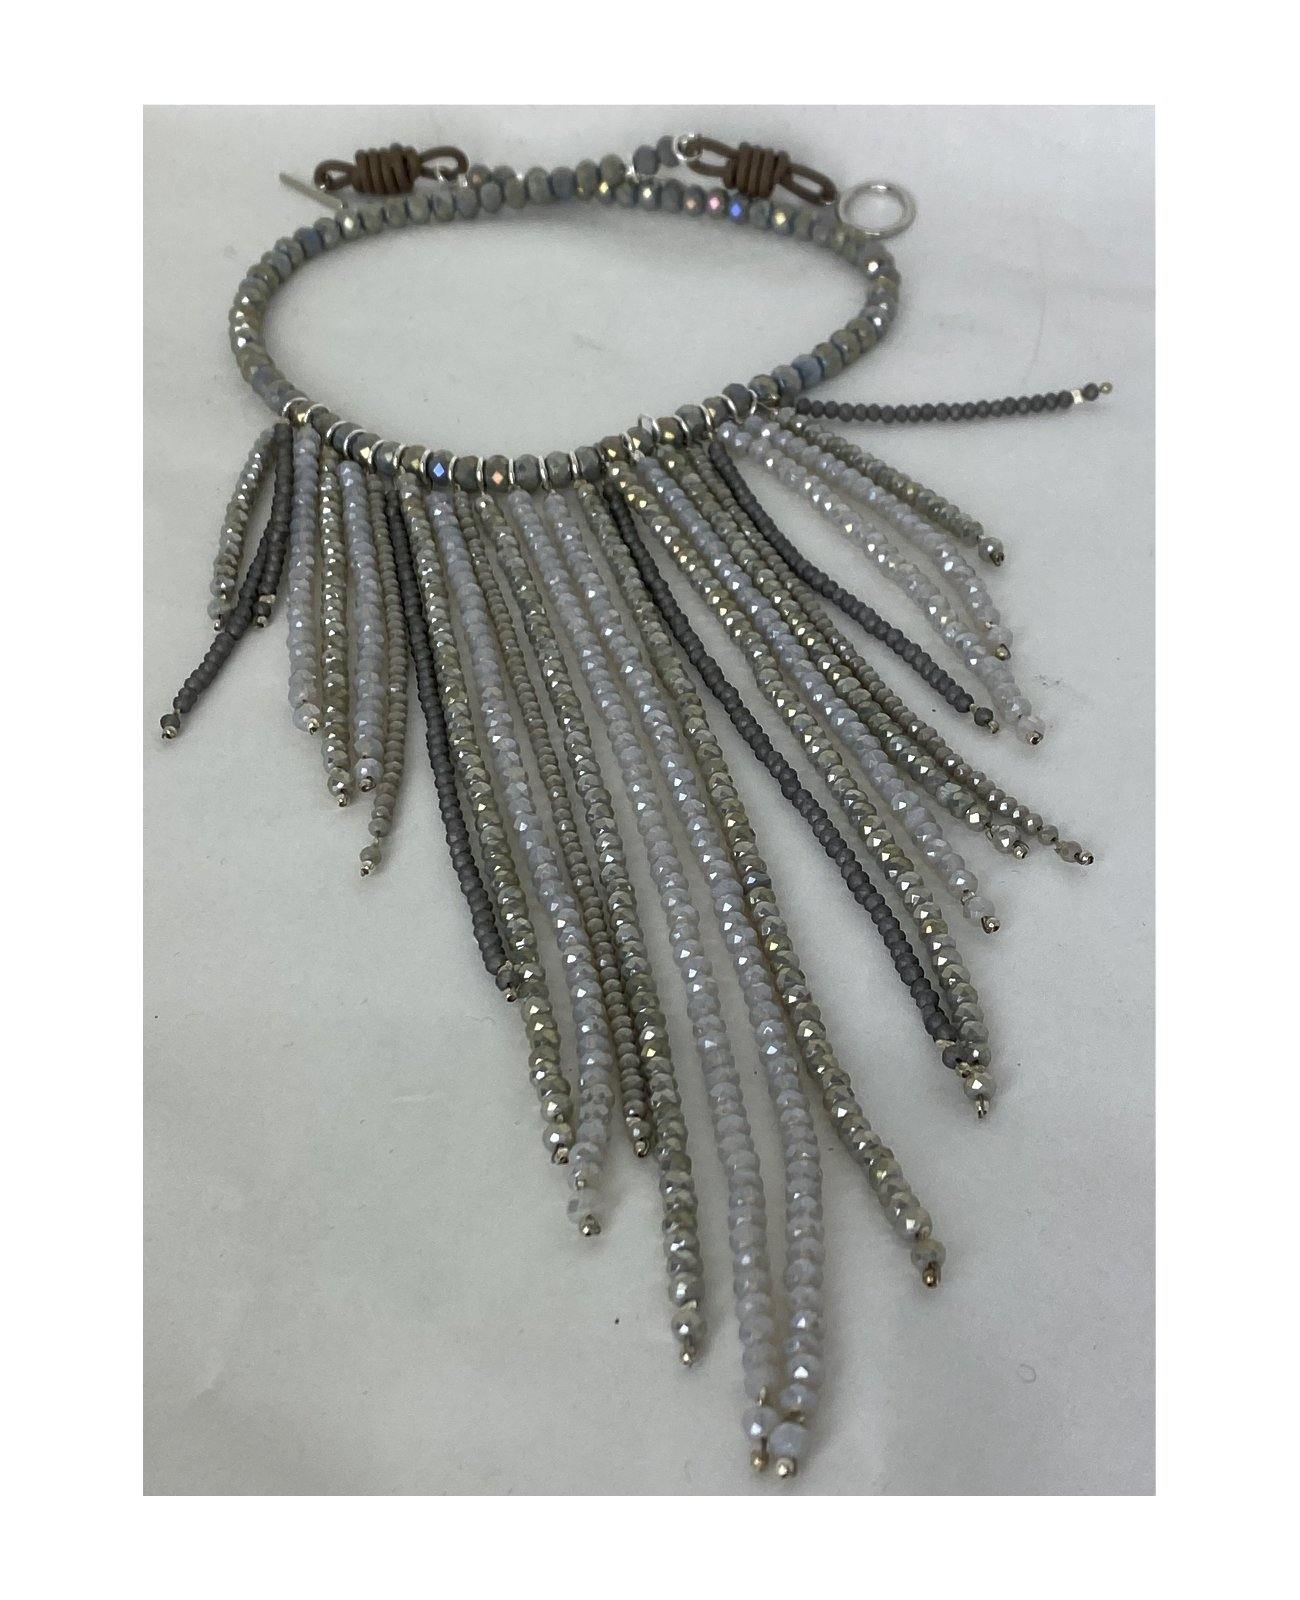 Halskette aus mehrsträngigen Glasperlen offwhite-taupe - C. Strauch Mode 